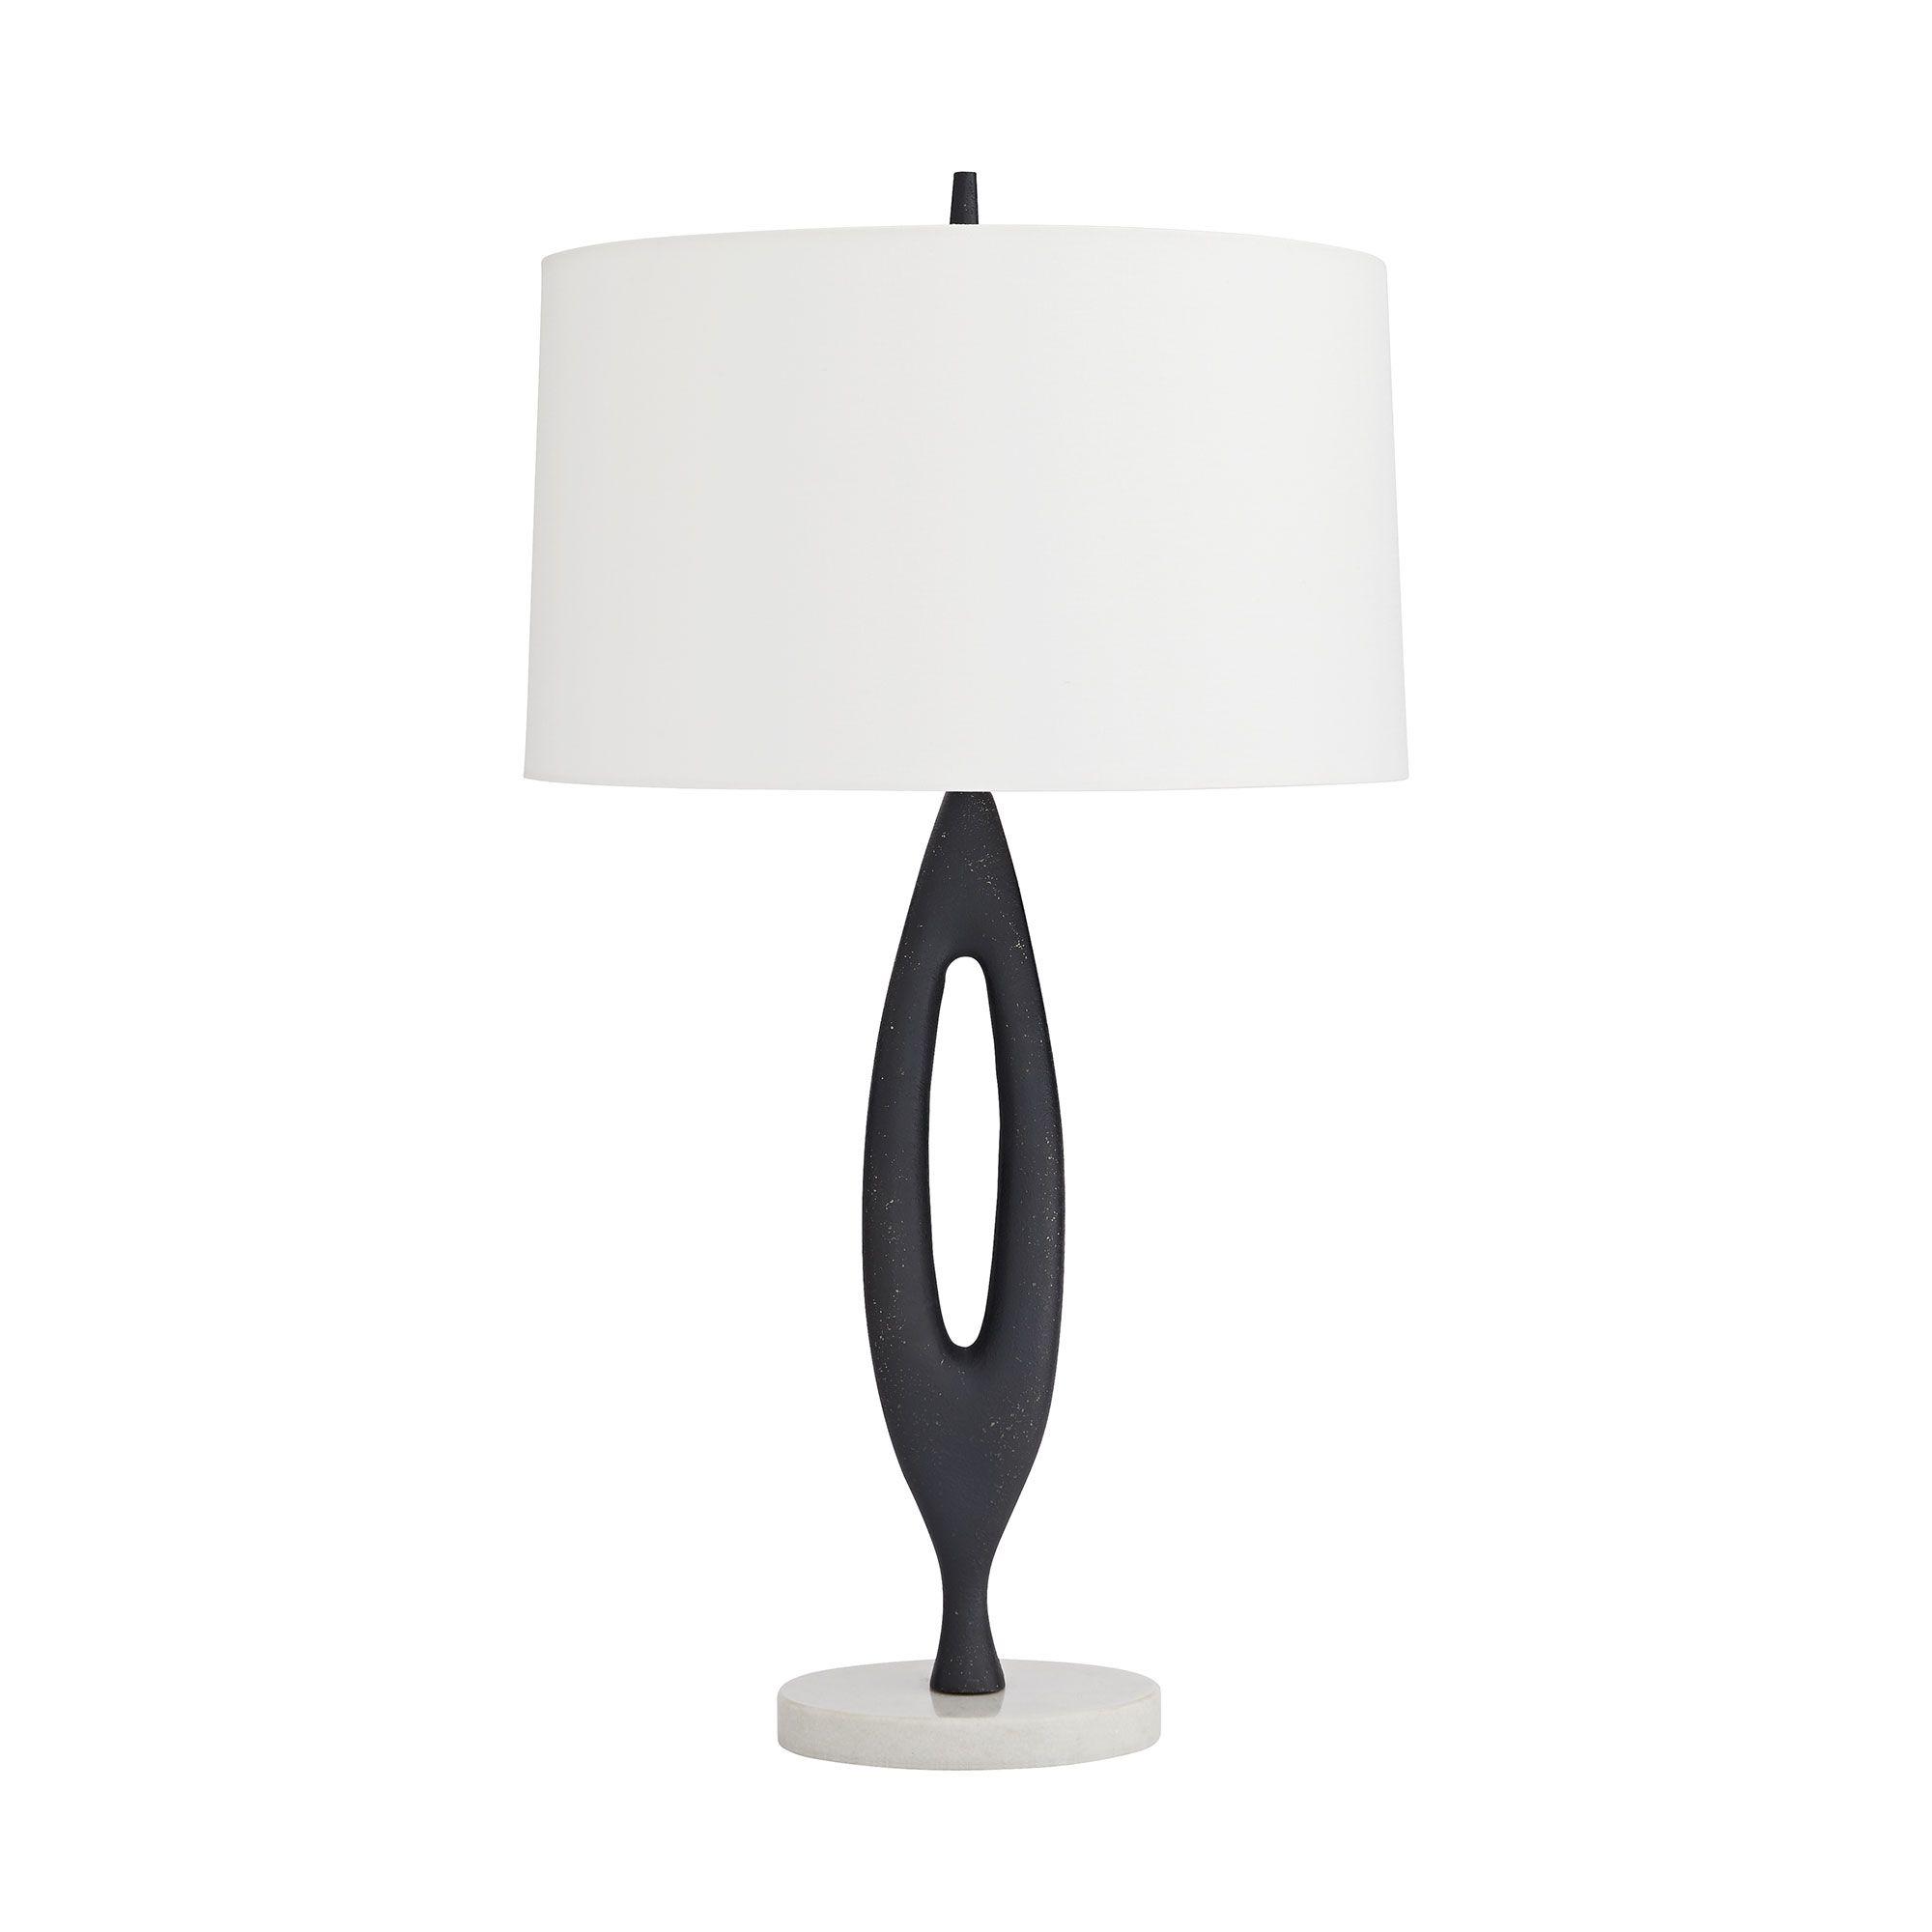 Купить Настольная лампа Hardwell Lamp в интернет-магазине roooms.ru